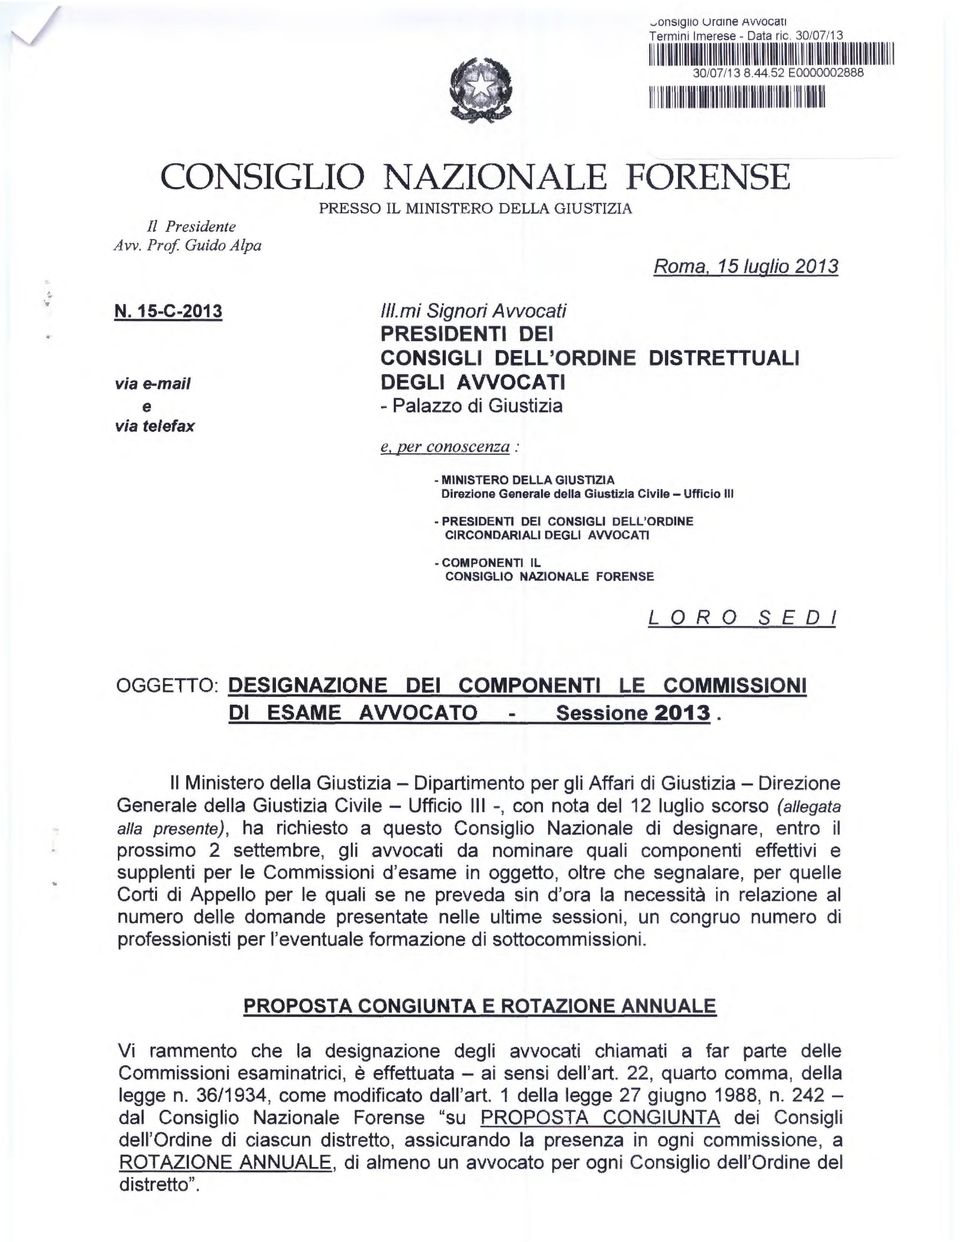 Prof Guido Alpa PRESSO IL MINISTERO DELLA GIUSTIZIA Roma, 15 luglio 2013 N. 15-C-2013 via e-mail e via telefax lii.